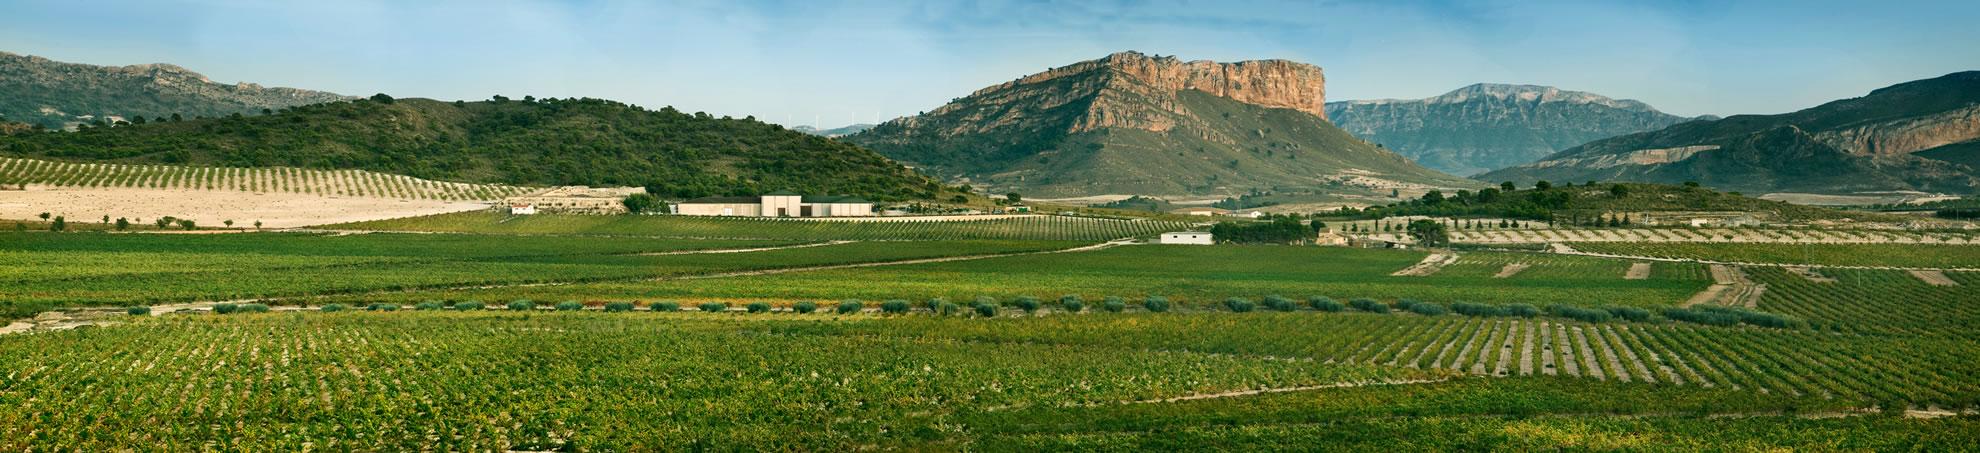 Jumilla & Tierra de Castilla vineyards